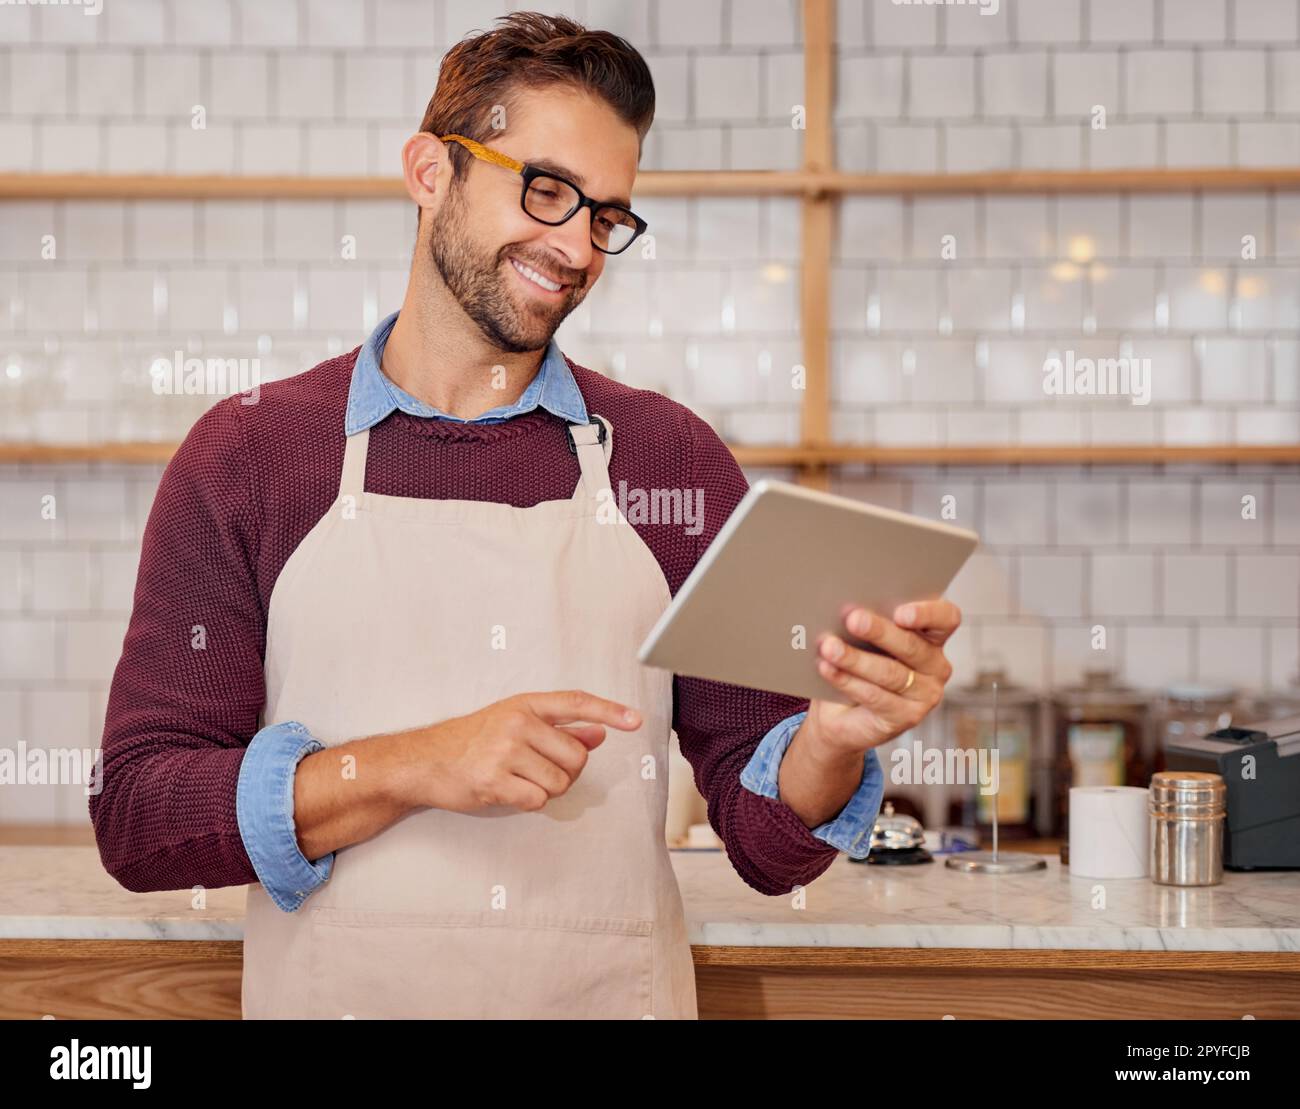 I miei clienti scrivono i commenti più belli. un giovane e felice imprenditore che utilizza un tablet mentre si trova nella sua caffetteria. Foto Stock